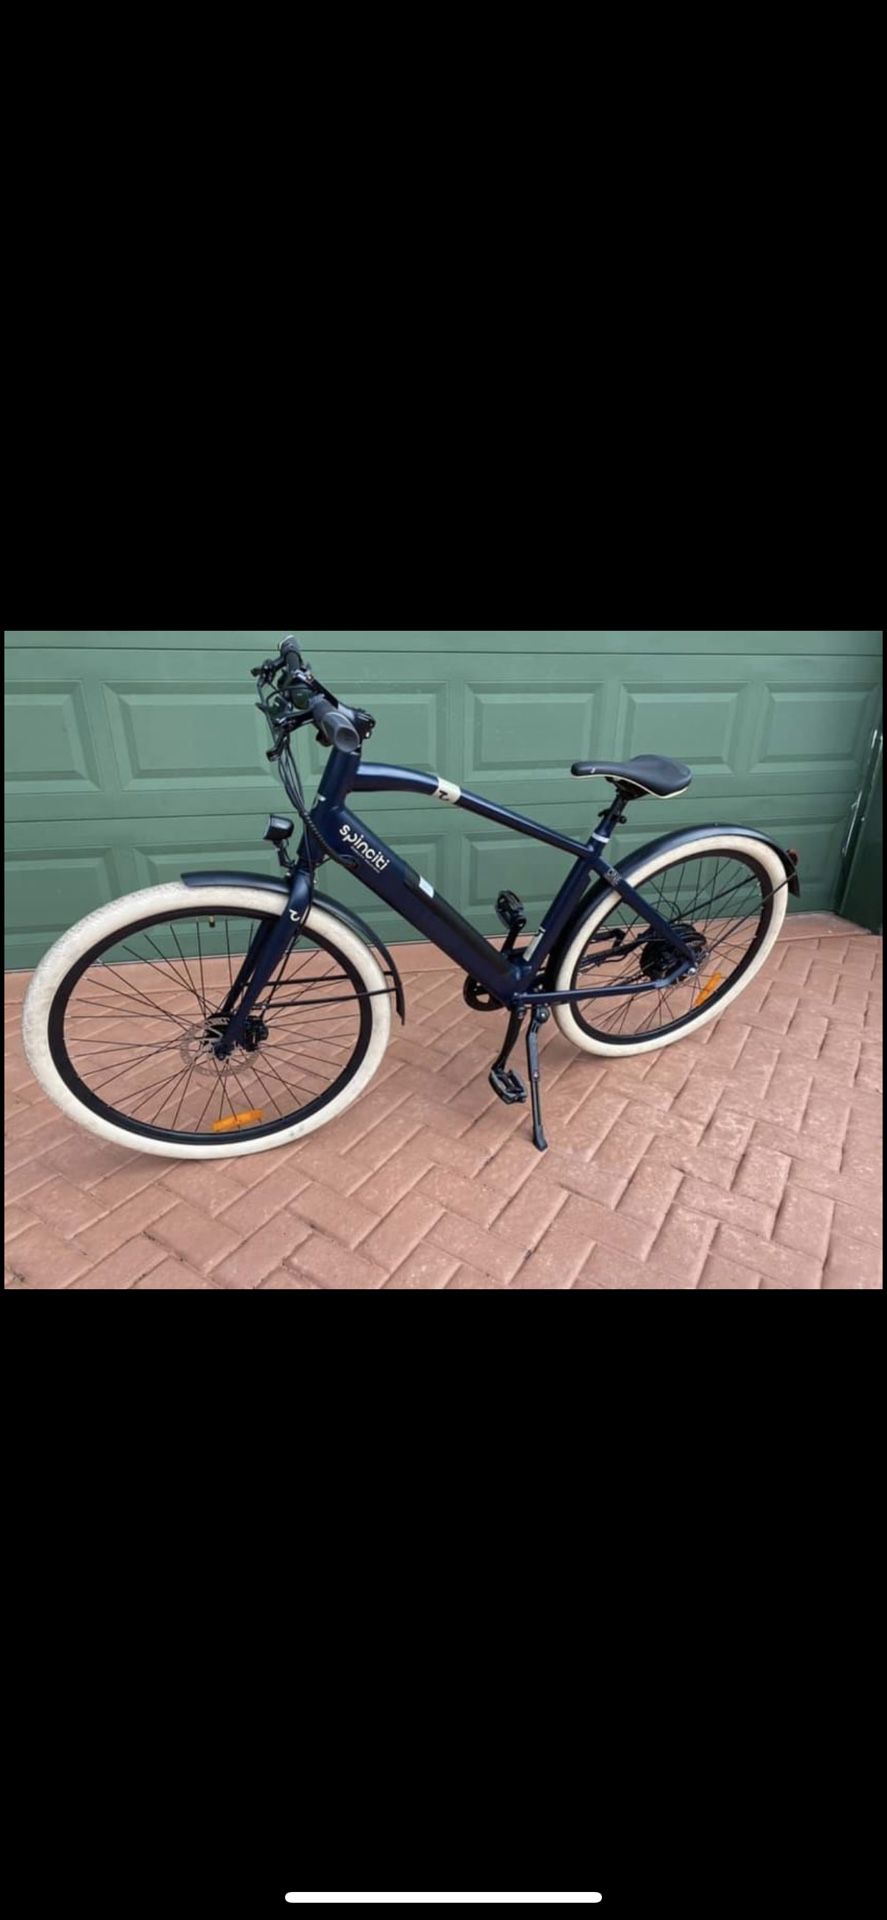 Electric Bike $1400